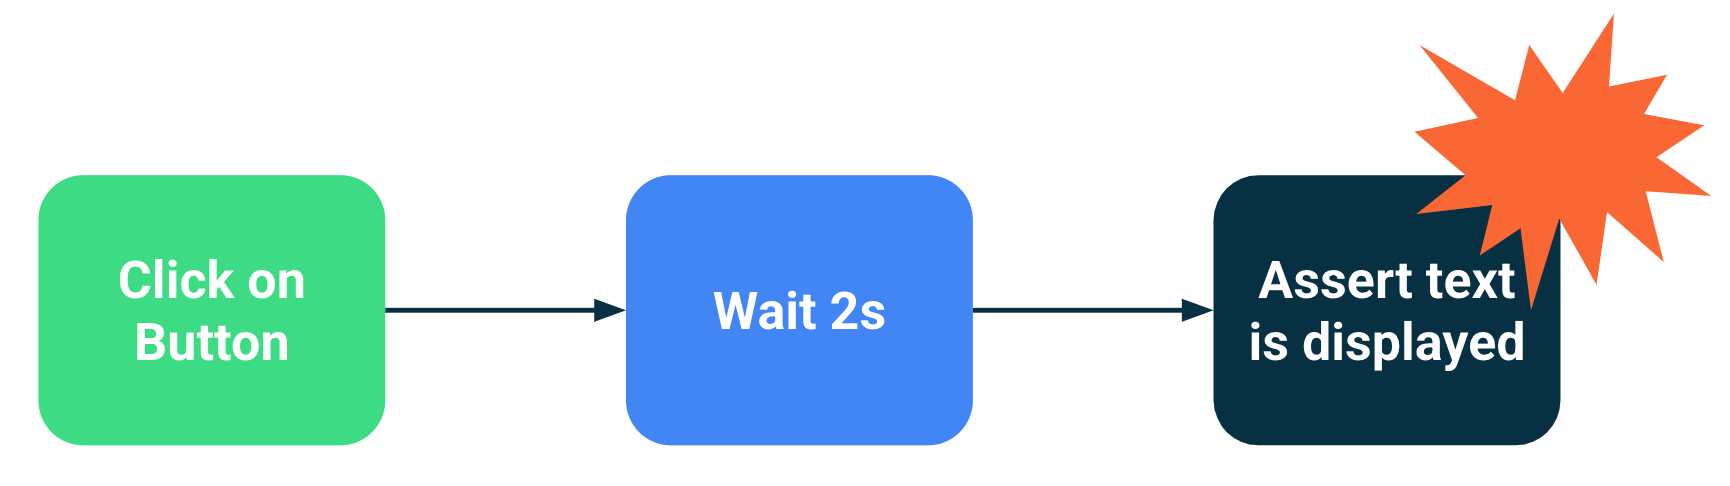 Diagramm, das einen Testfehler zeigt, wenn die Synchronisierung auf dem Warten auf eine bestimmte Zeit basiert